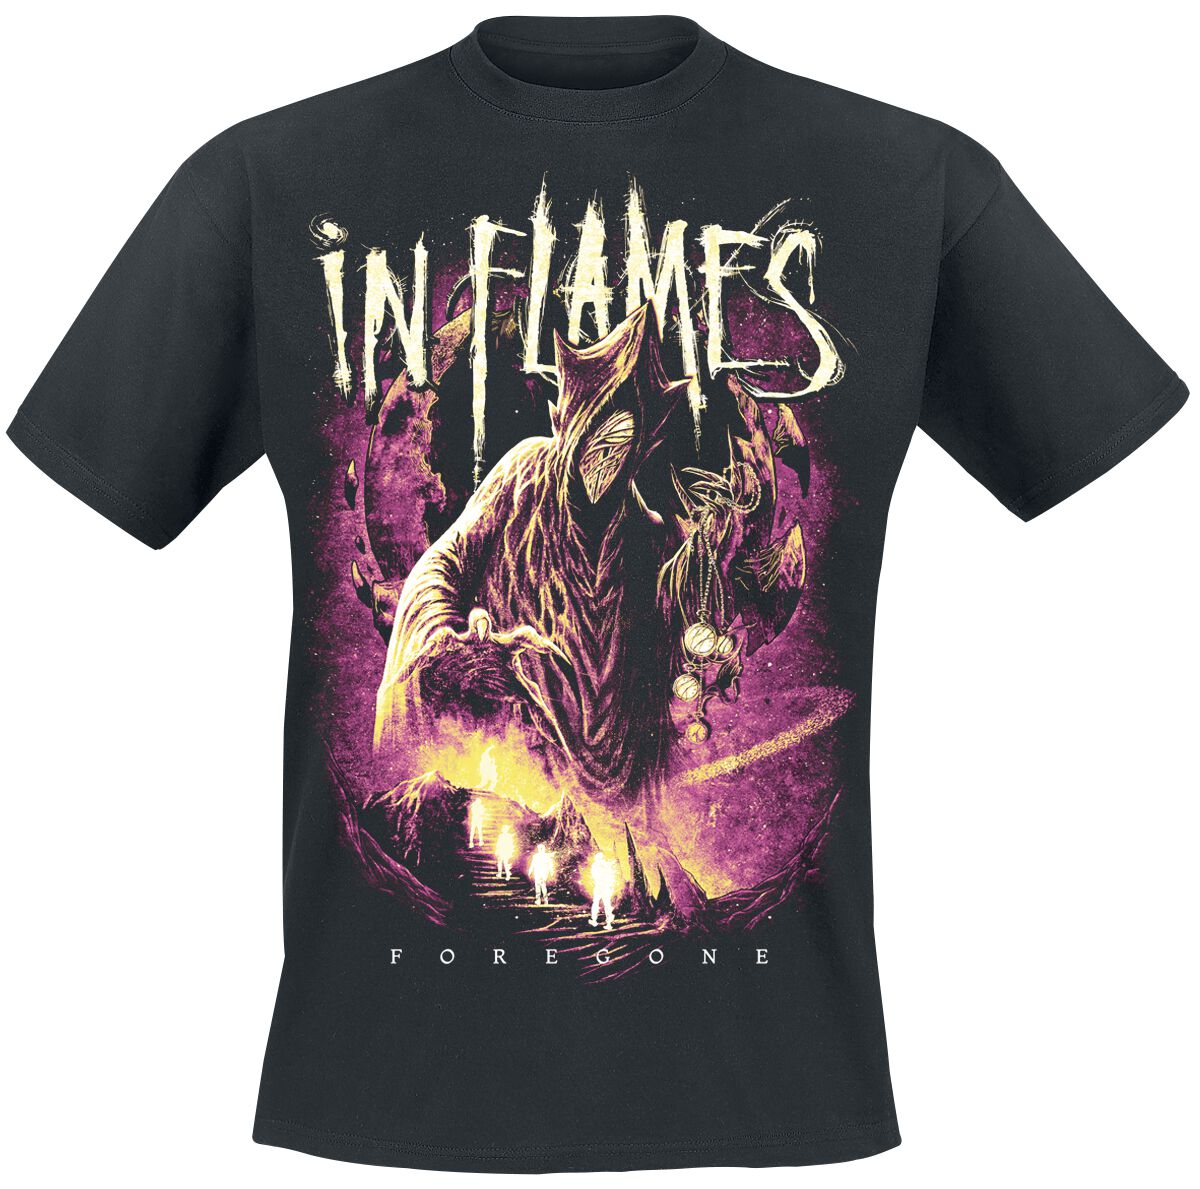 In Flames T-Shirt - Foregone Space - M bis 3XL - für Männer - Größe M - schwarz  - Lizenziertes Merchandise!